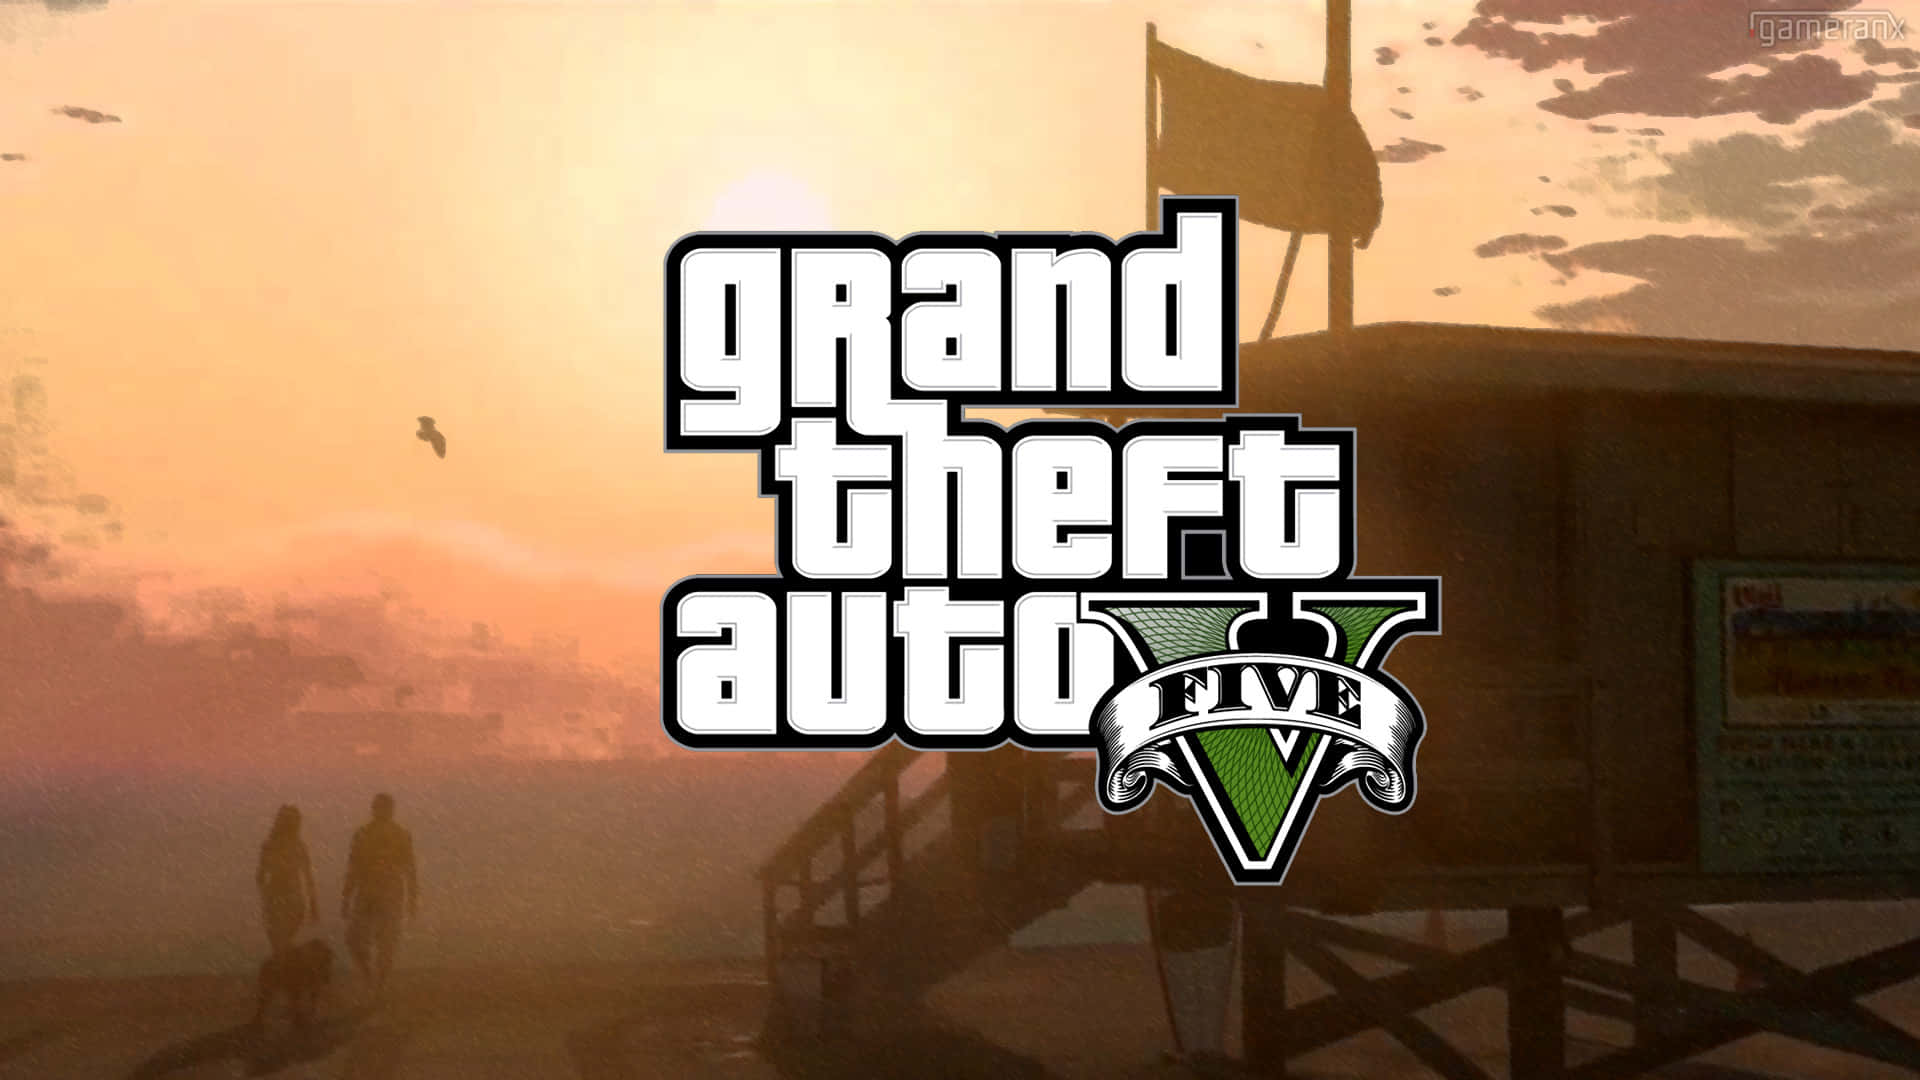 Sfondigrand Theft Auto V